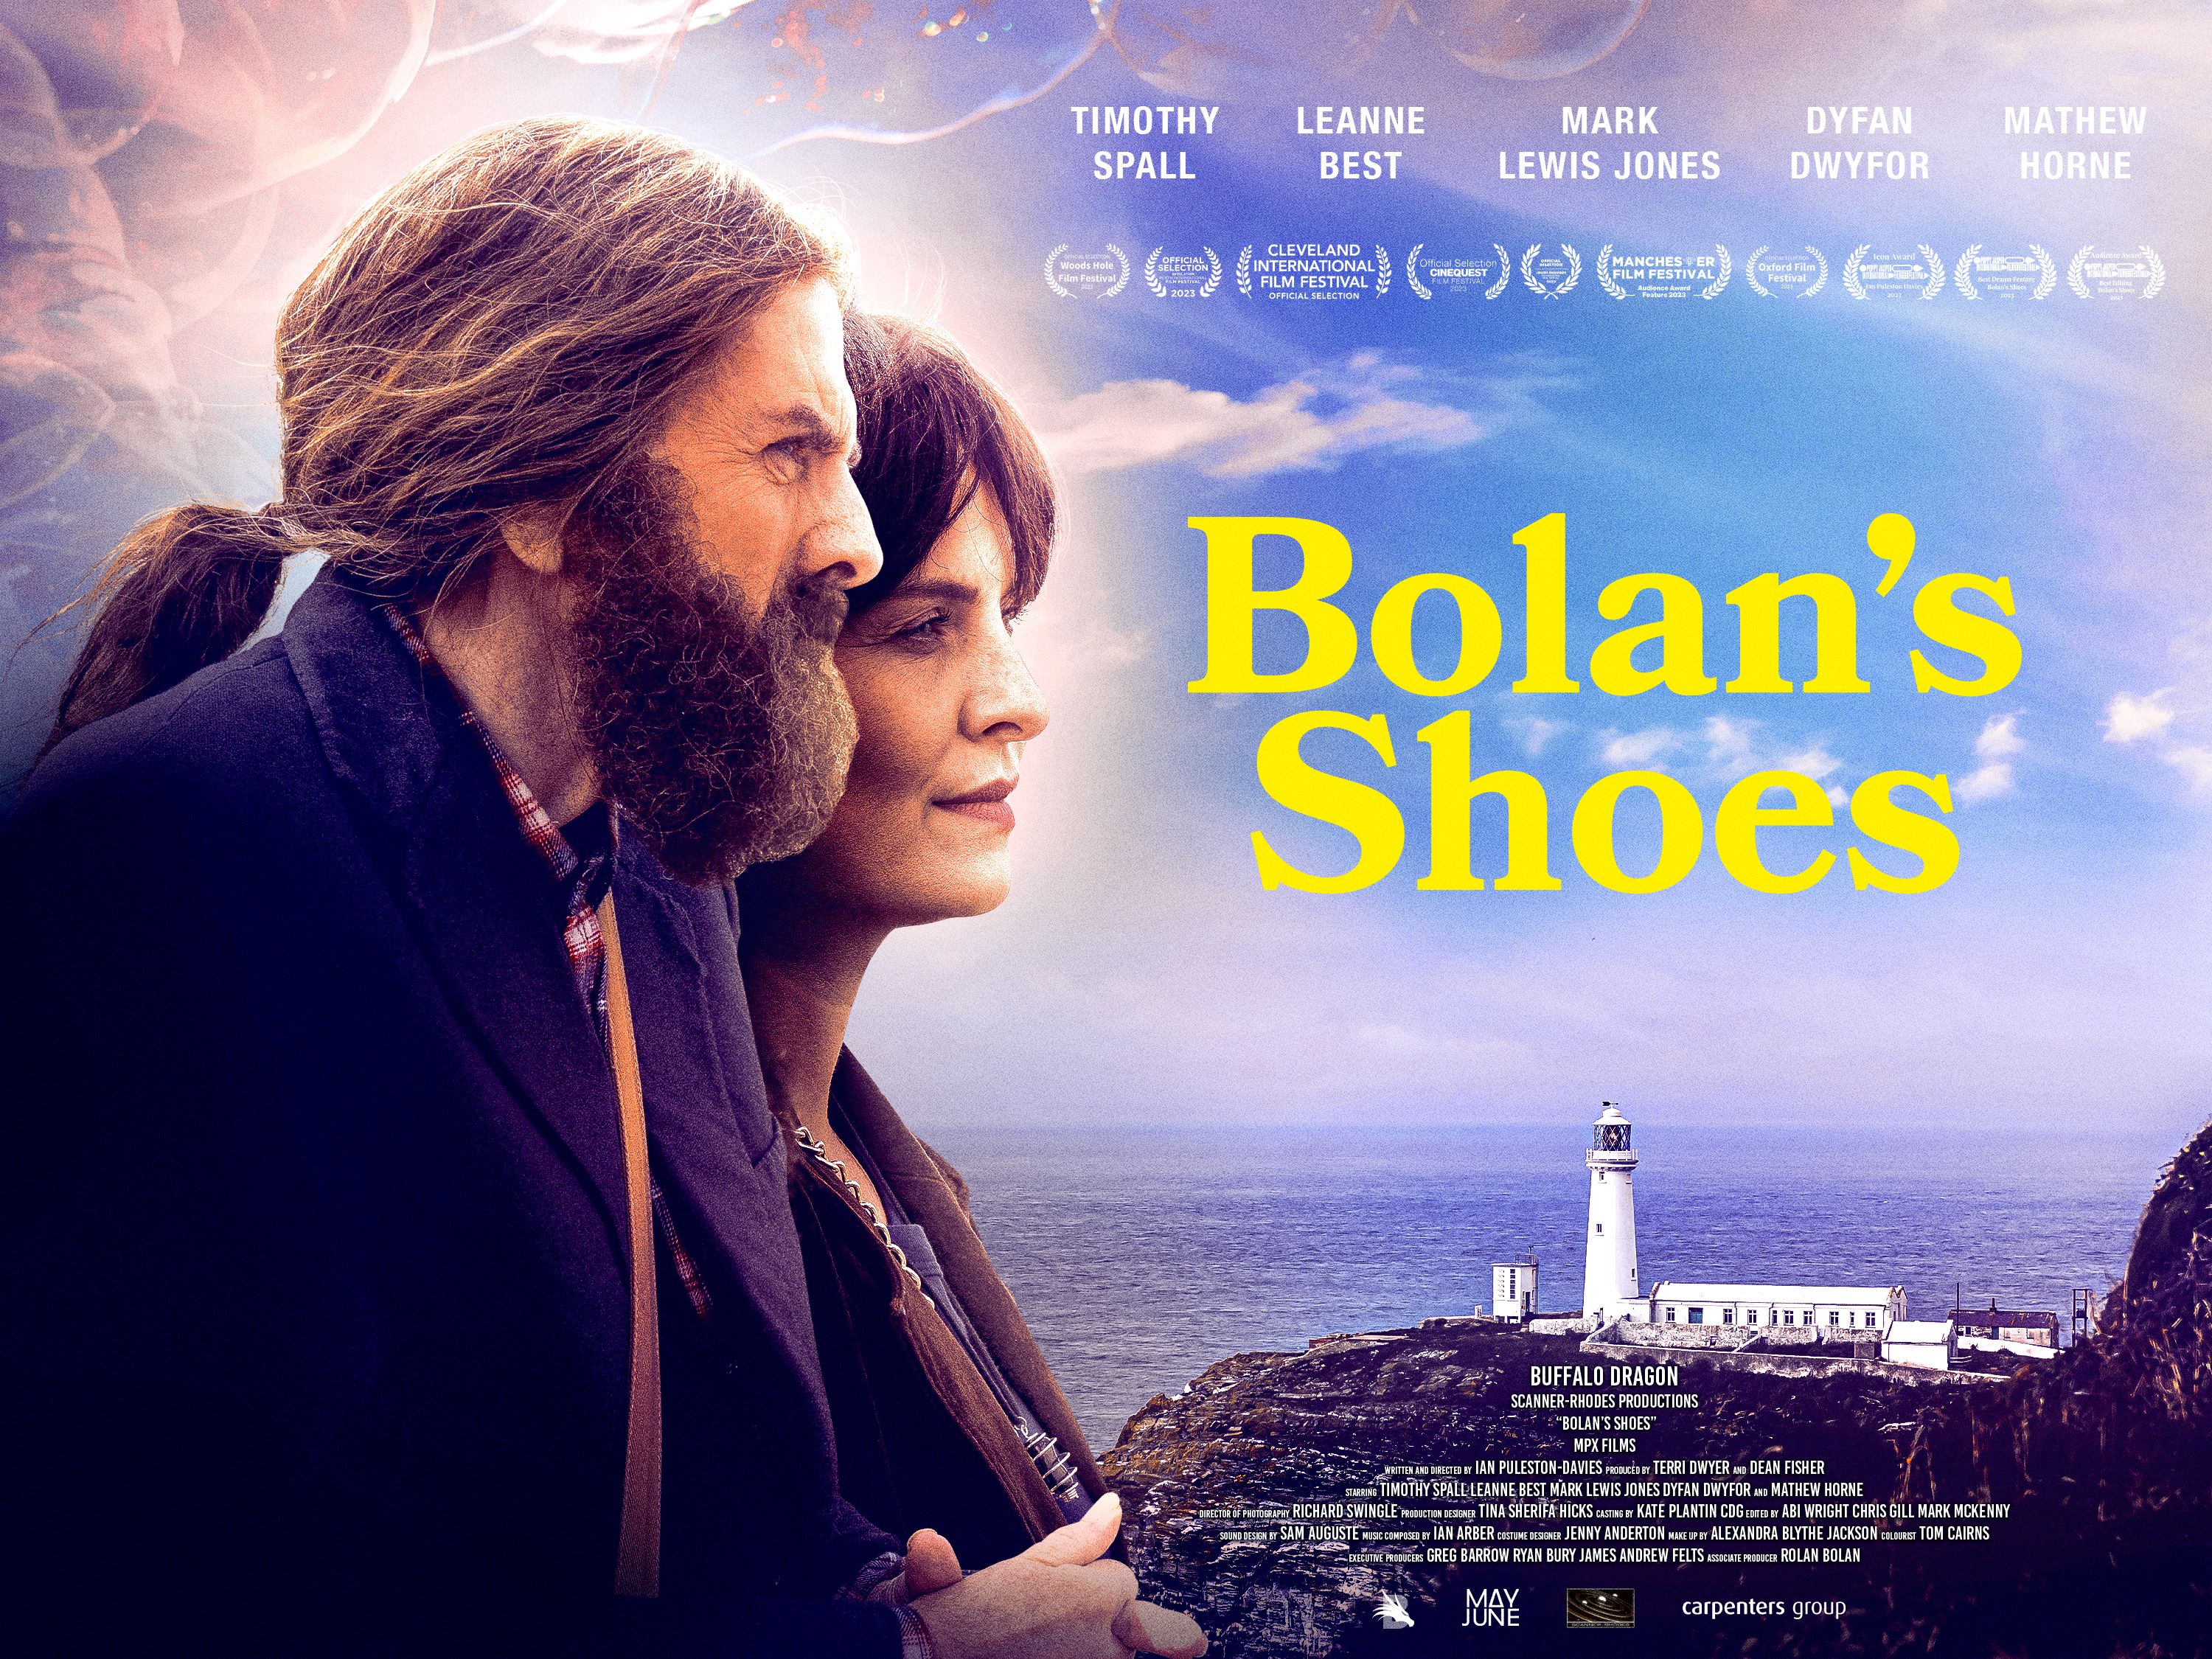 Bolan's Shoes landscape image